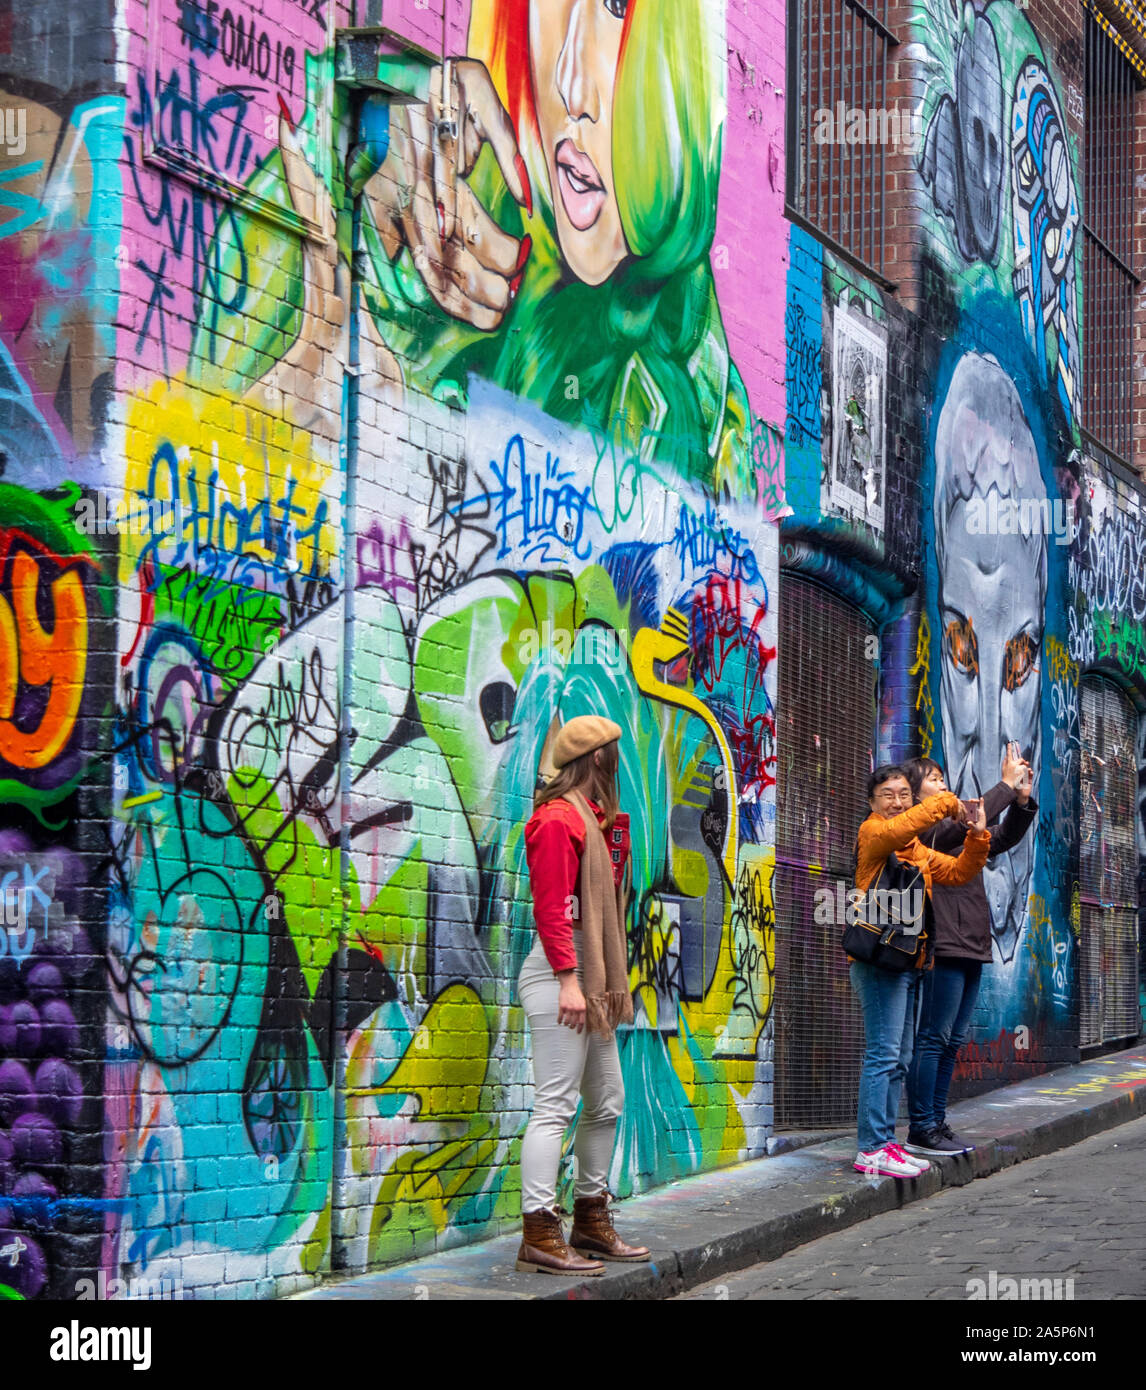 Frau auf der Suche nach Touristen fotografieren in Hosier Lane Wände in Graffiti und Street Art Melbourne Victoria Australien abgedeckt. Stockfoto